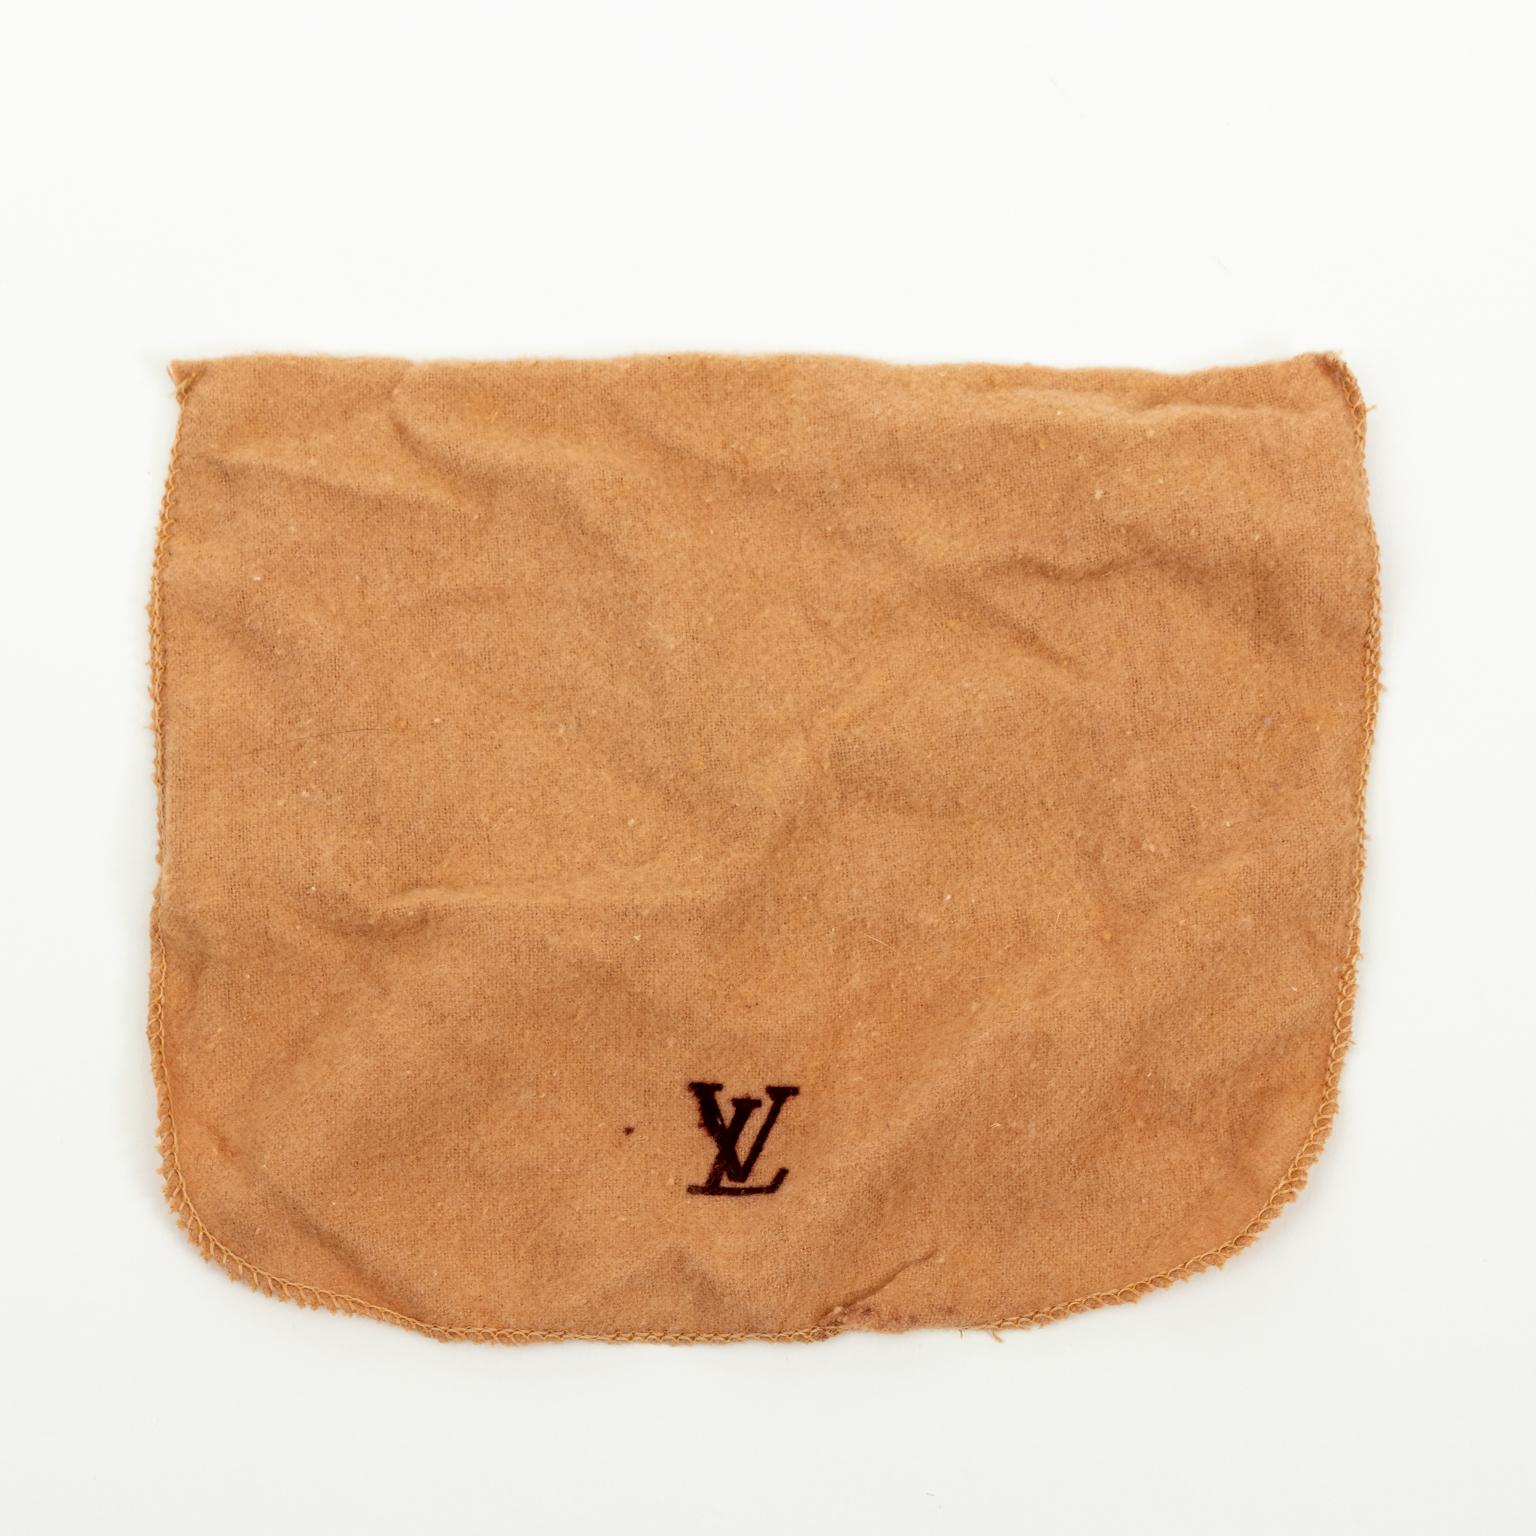 Authentic Louis Vuitton Handbag 2